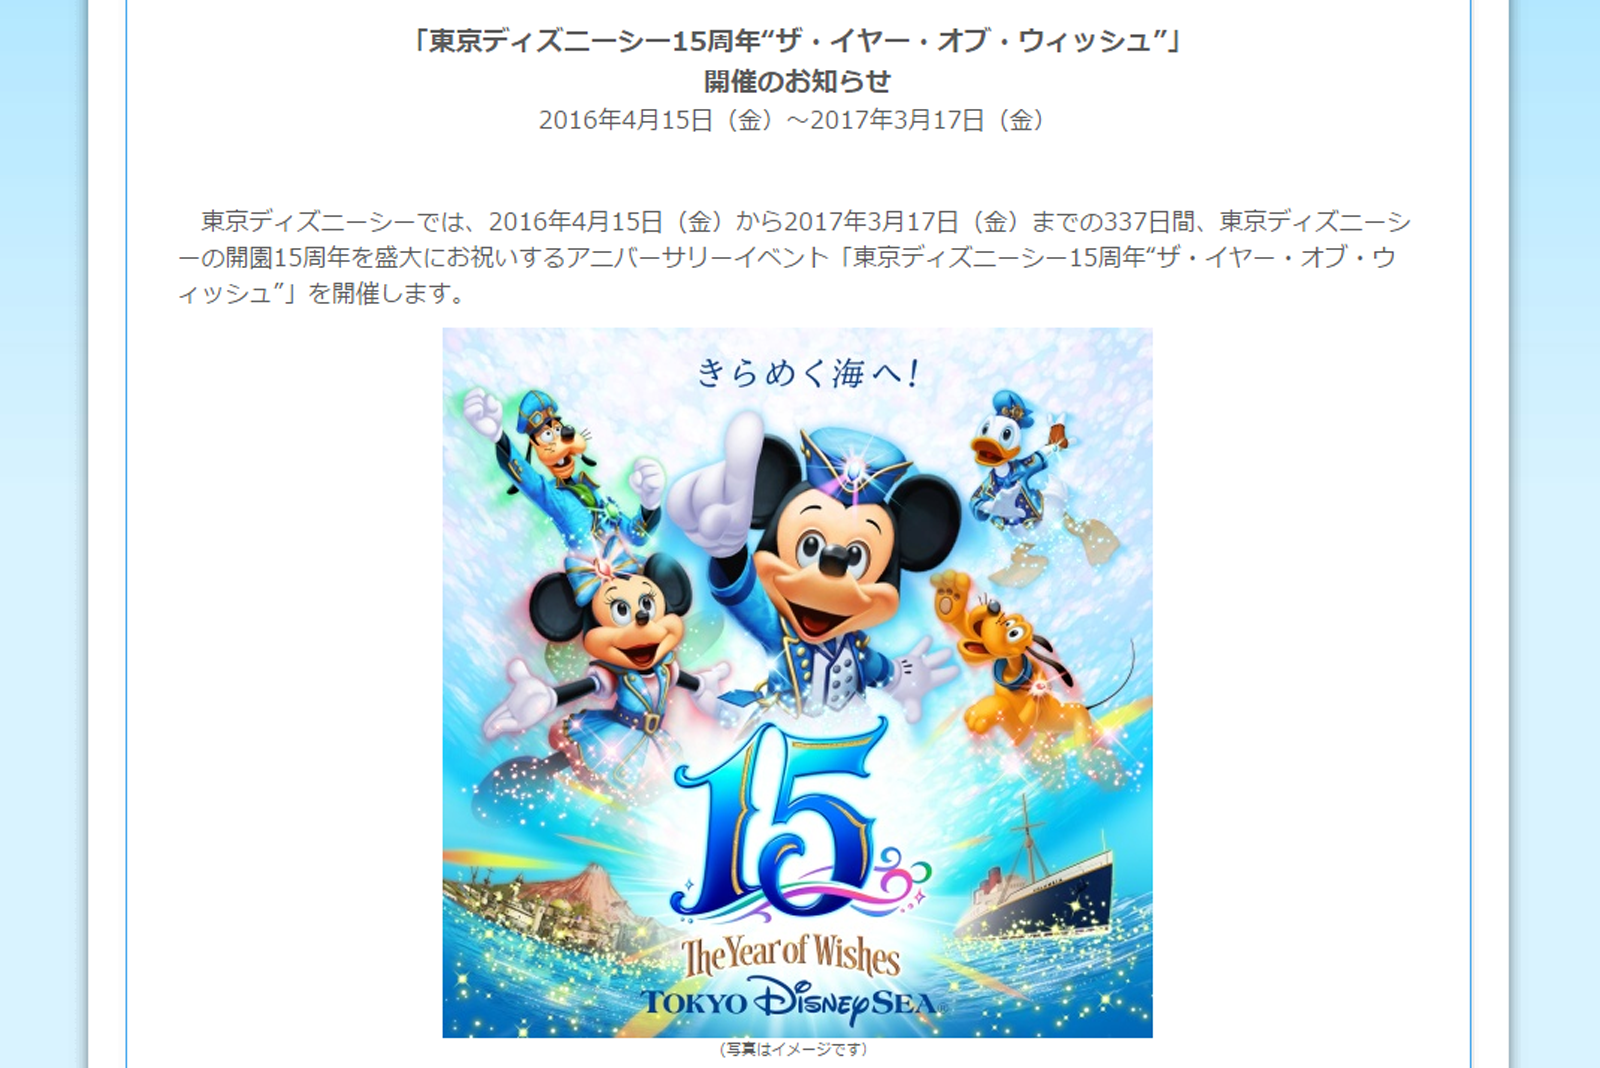 東京ディズニーシー15周年“ザ・イヤー・オブ・ウィッシュ”